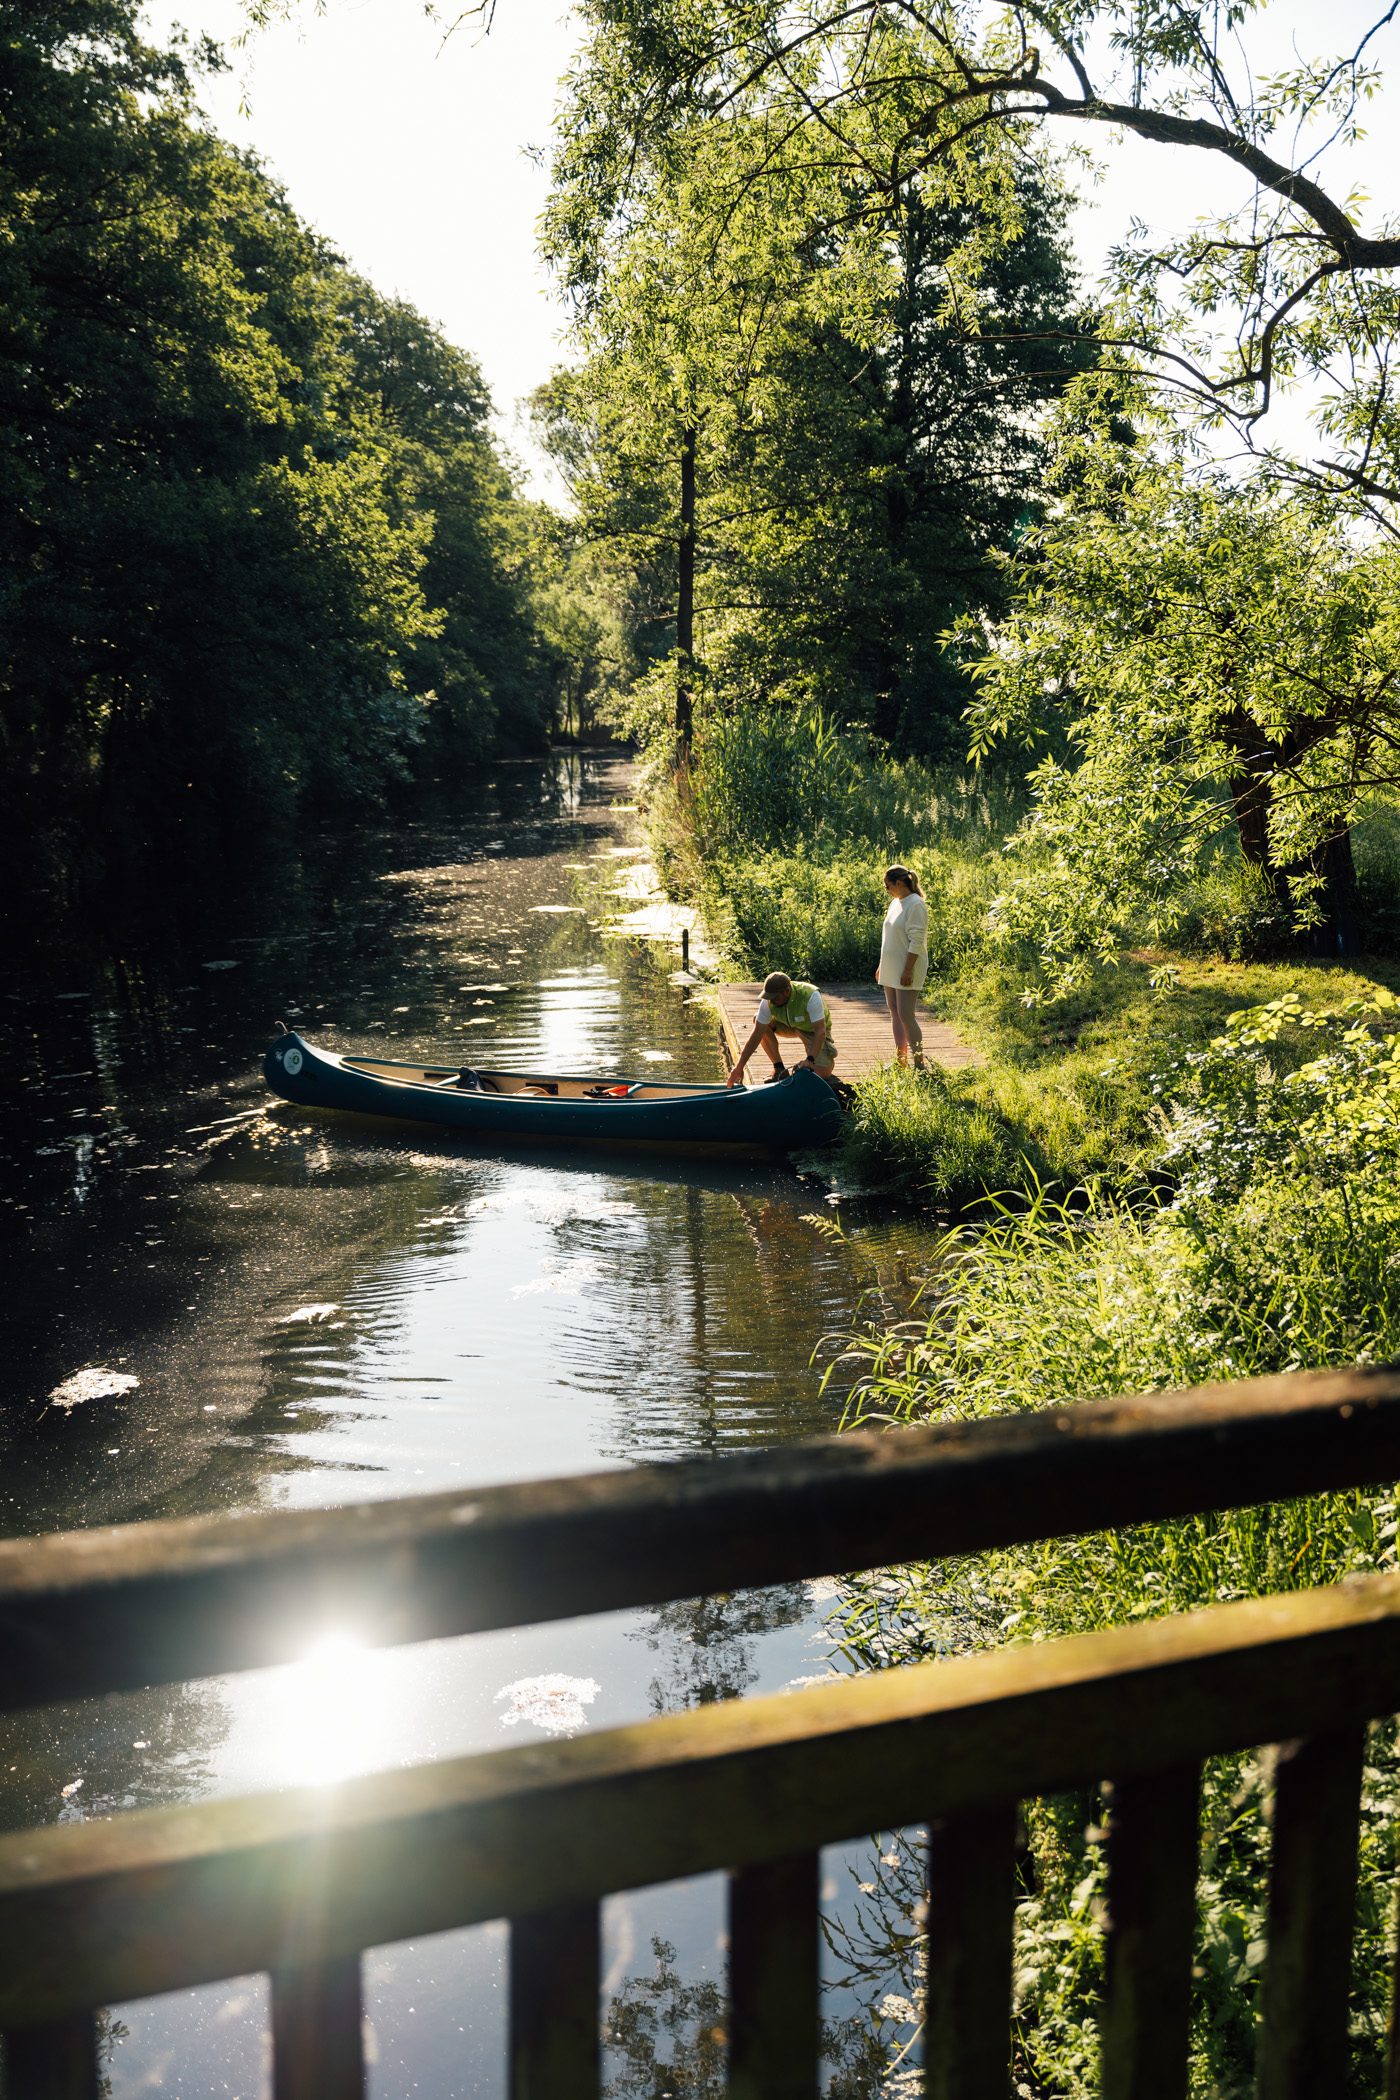 Canoe ride at Löcknitz river in UNESCO biosphere reserve Elbe river landscape in the Prignitz region of Brandenburg, Germany